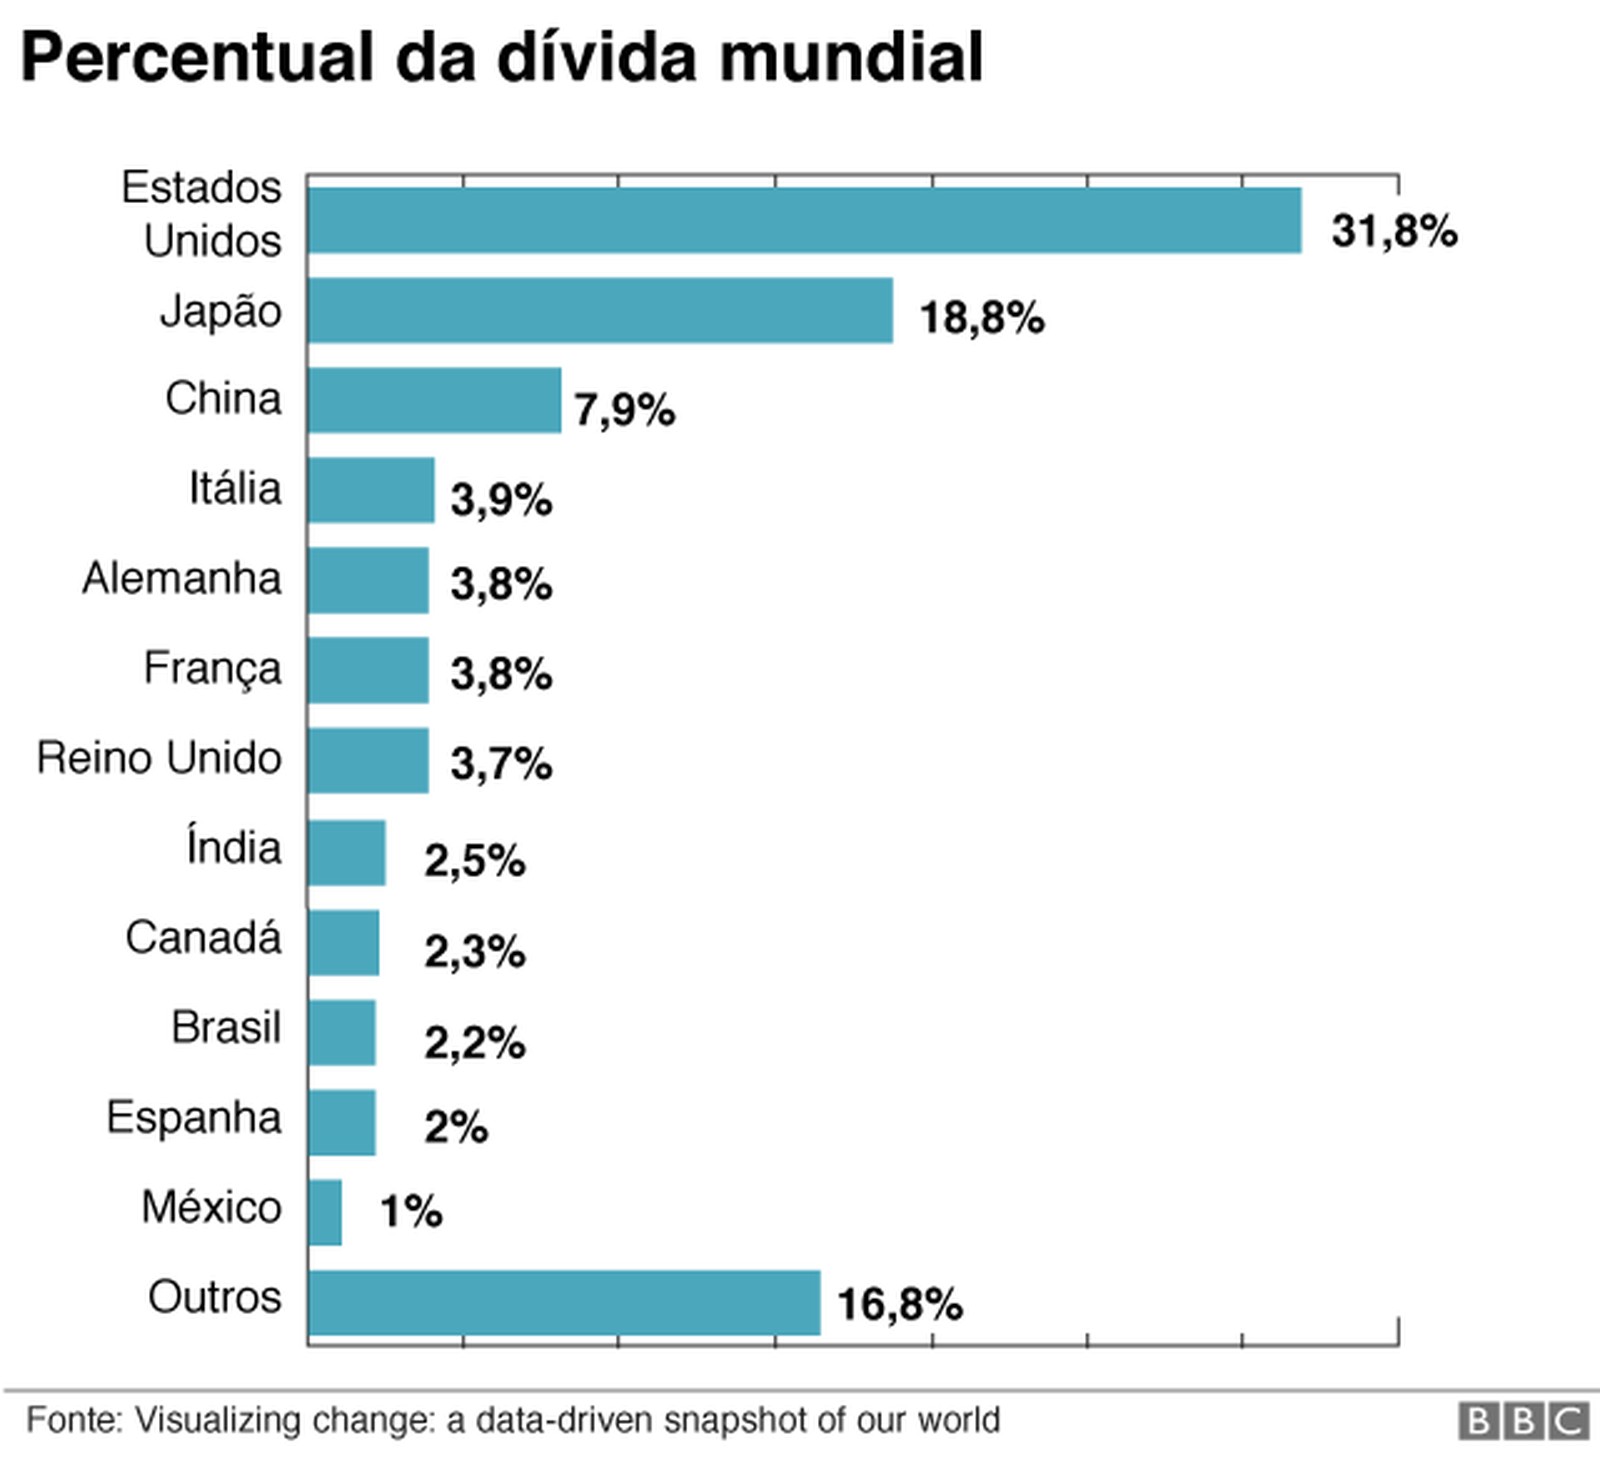 6-grafico-do-percentual-da-divida-mundial-por-pais.jpeg